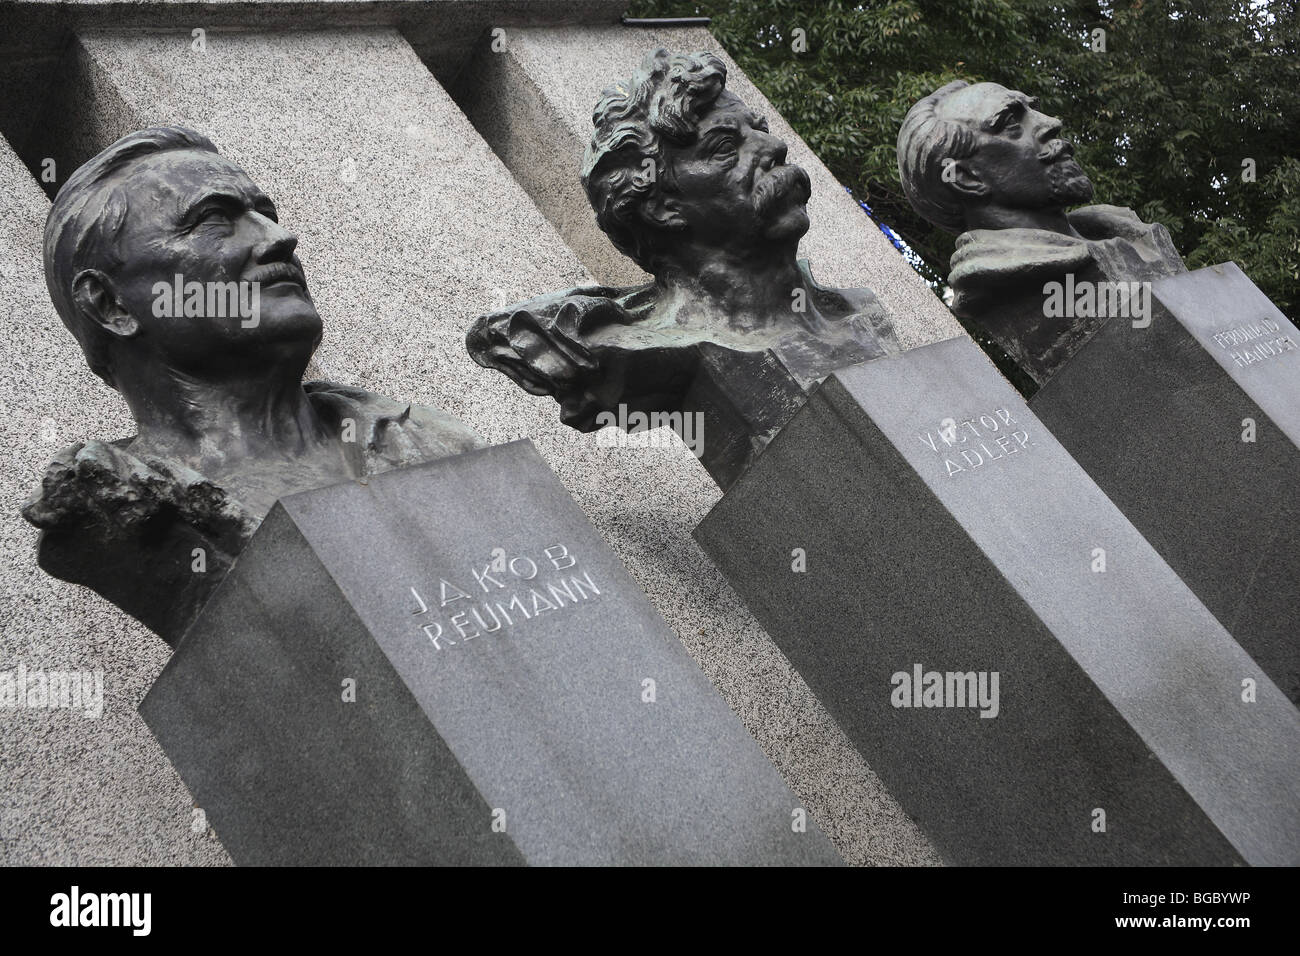 Monument de la République avec les bustes de Jakob Reumann, Victor Adler et Ferdinand Hanusch, Vienne, Autriche Banque D'Images